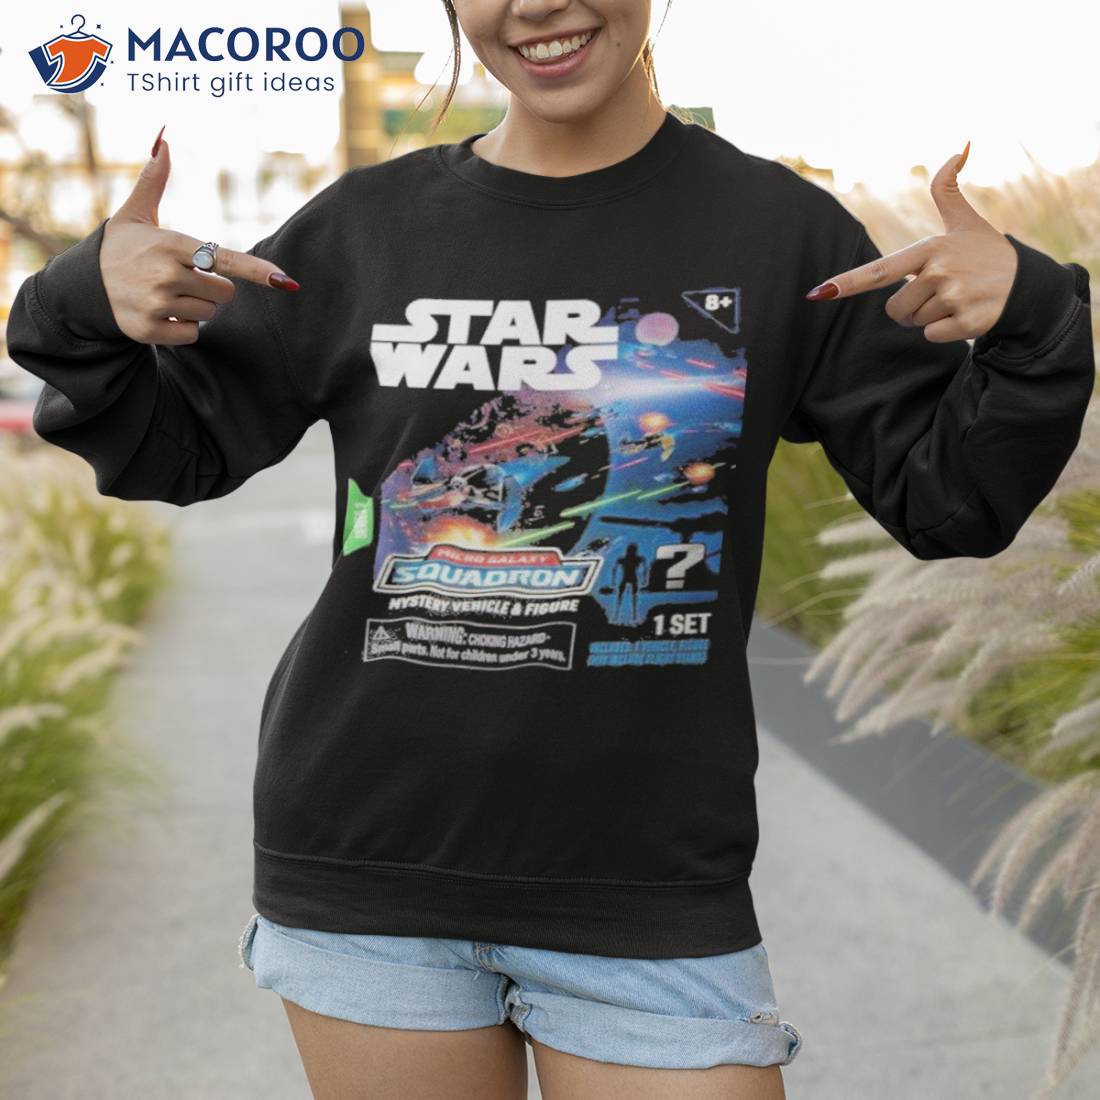 Galactic Style: Star Wars Hawaiian Shirt - Limited Edition